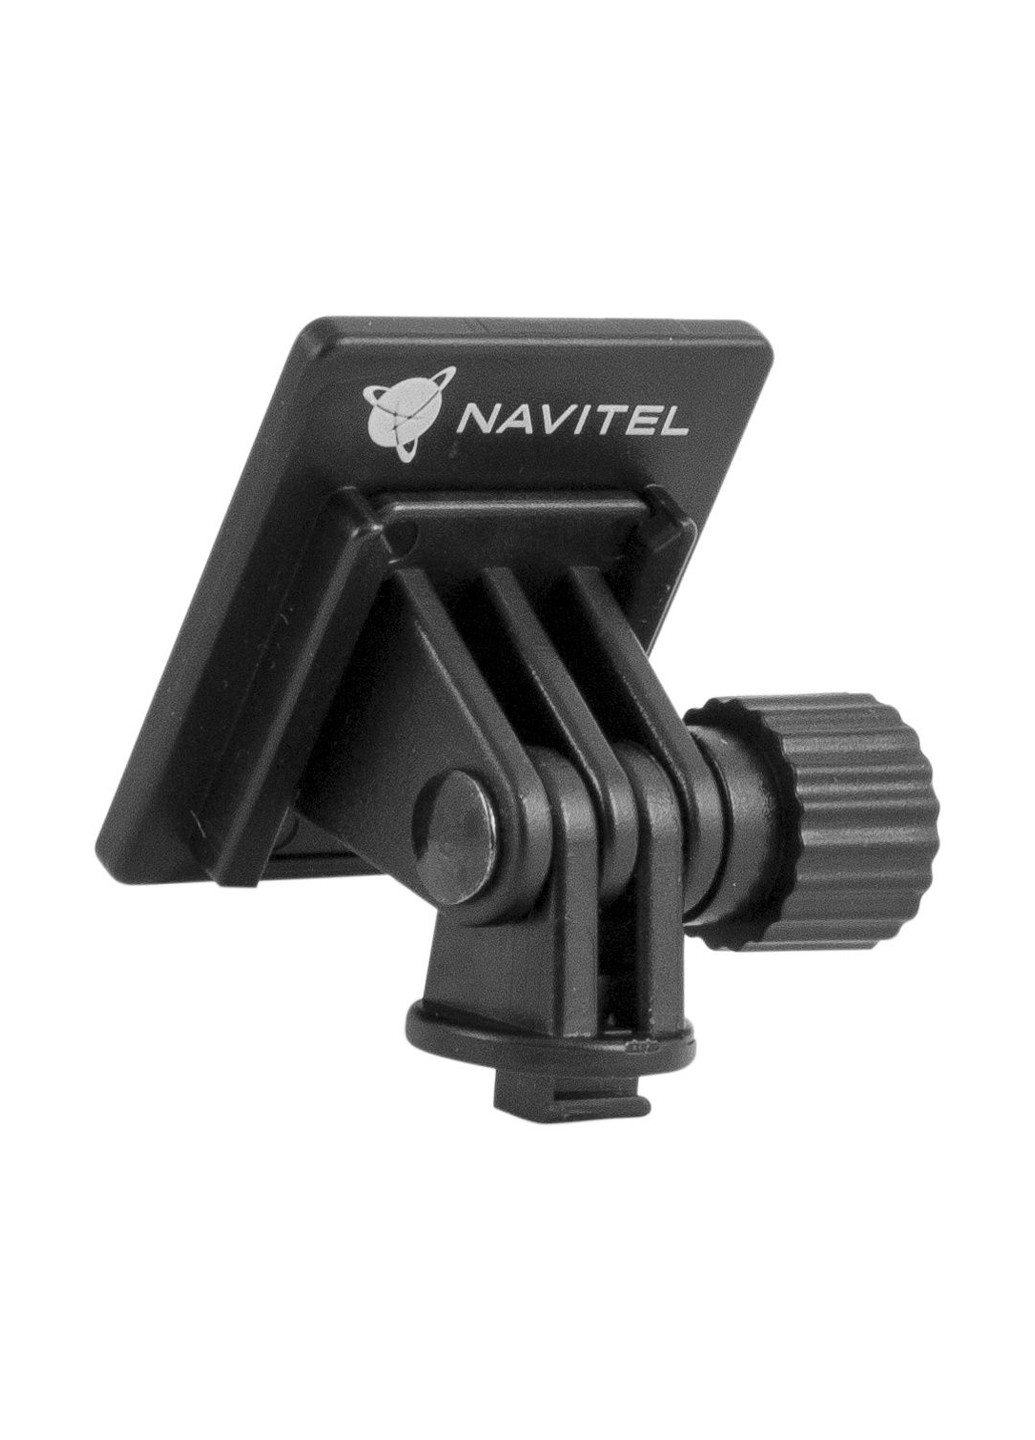 Відеореєстратор для авто Navitel r400 night vision (157406238)